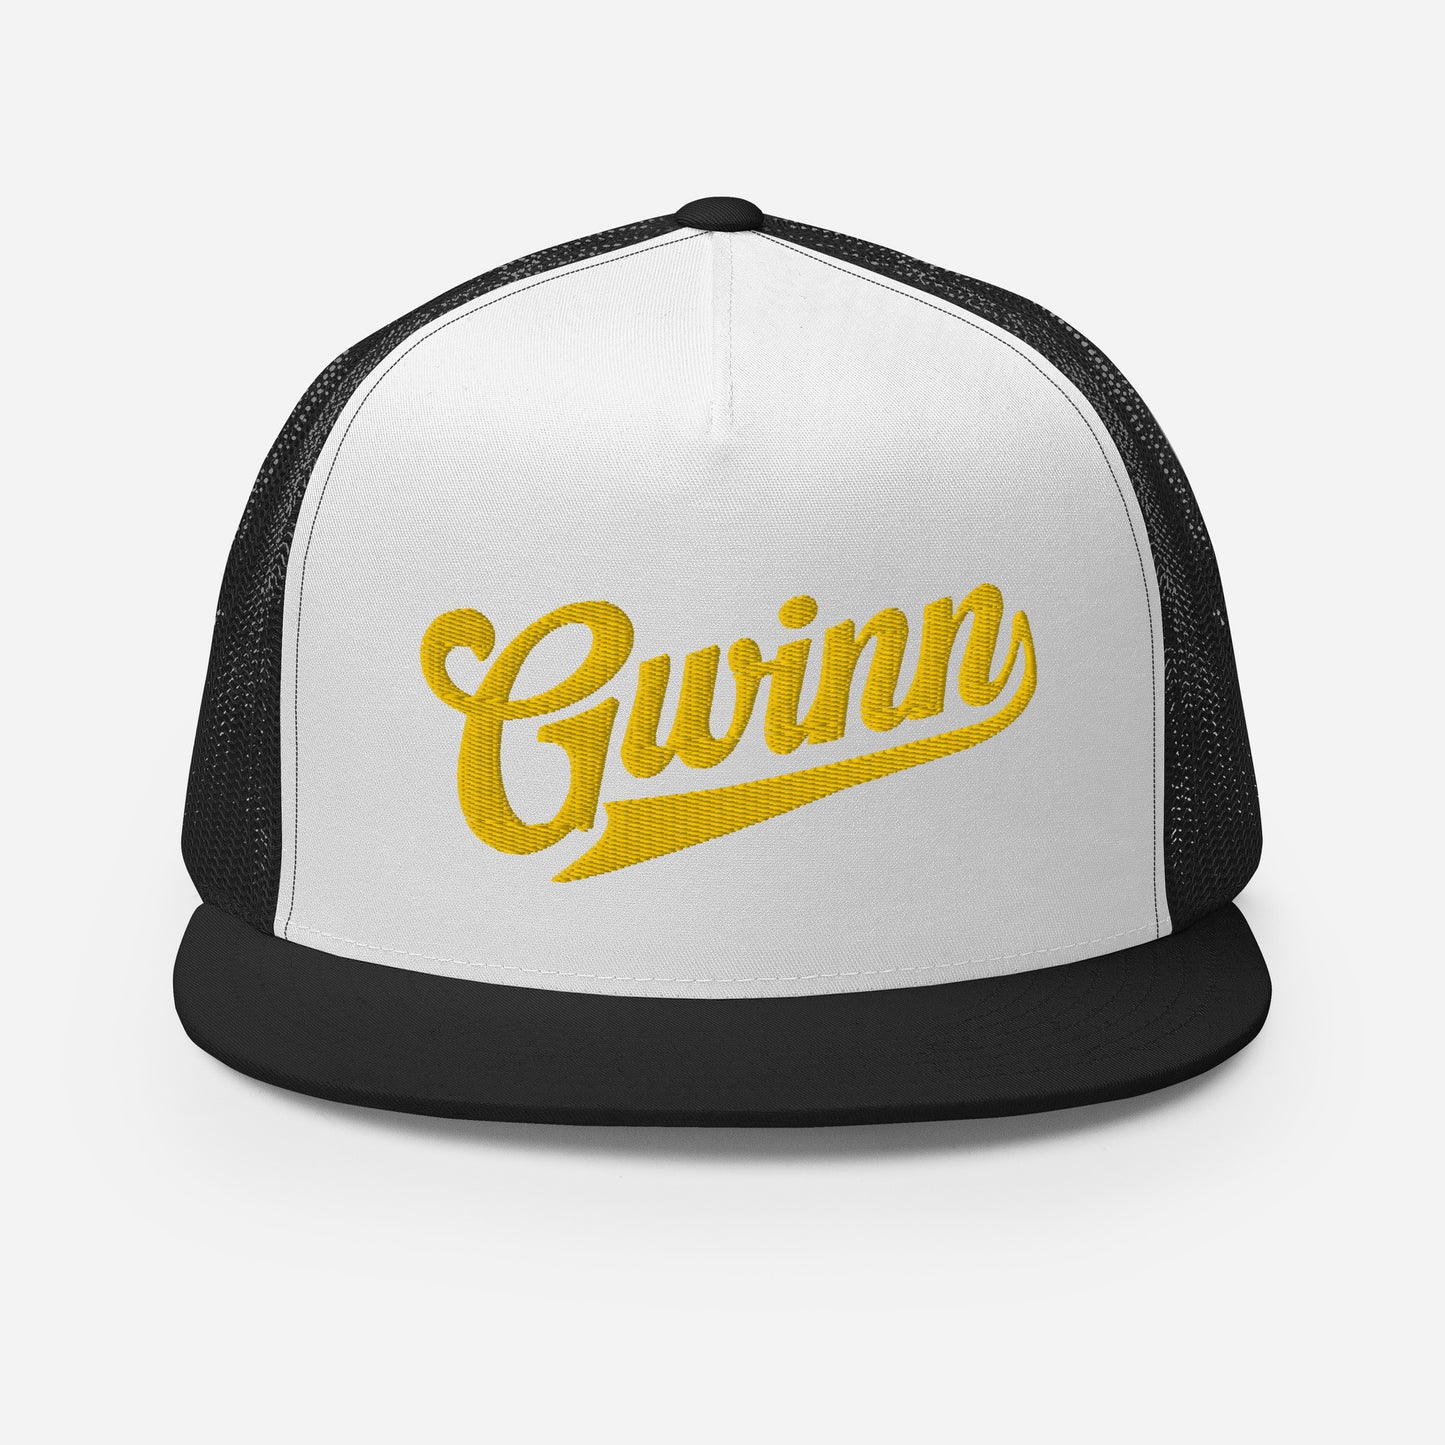 Gwinn Cap